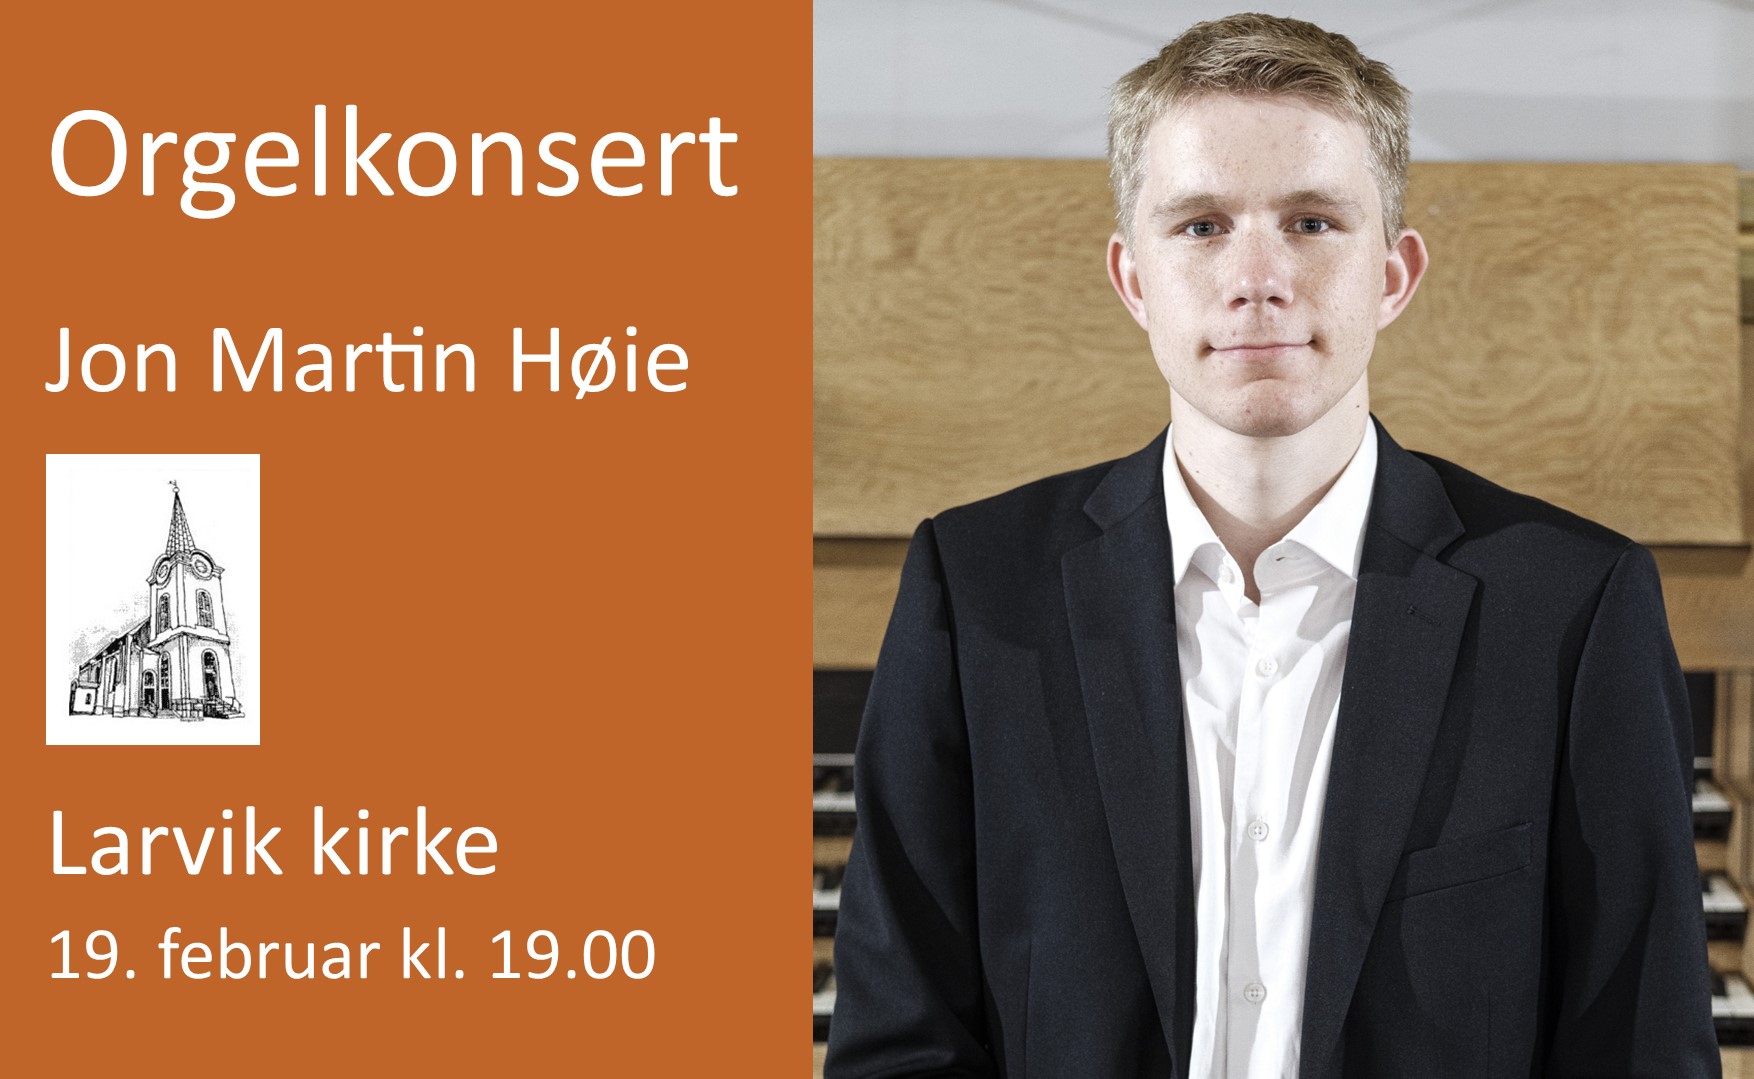 Jon Martin Høie holder orgelkonsert i Larvik kirke 19. februar kl. 19:00.